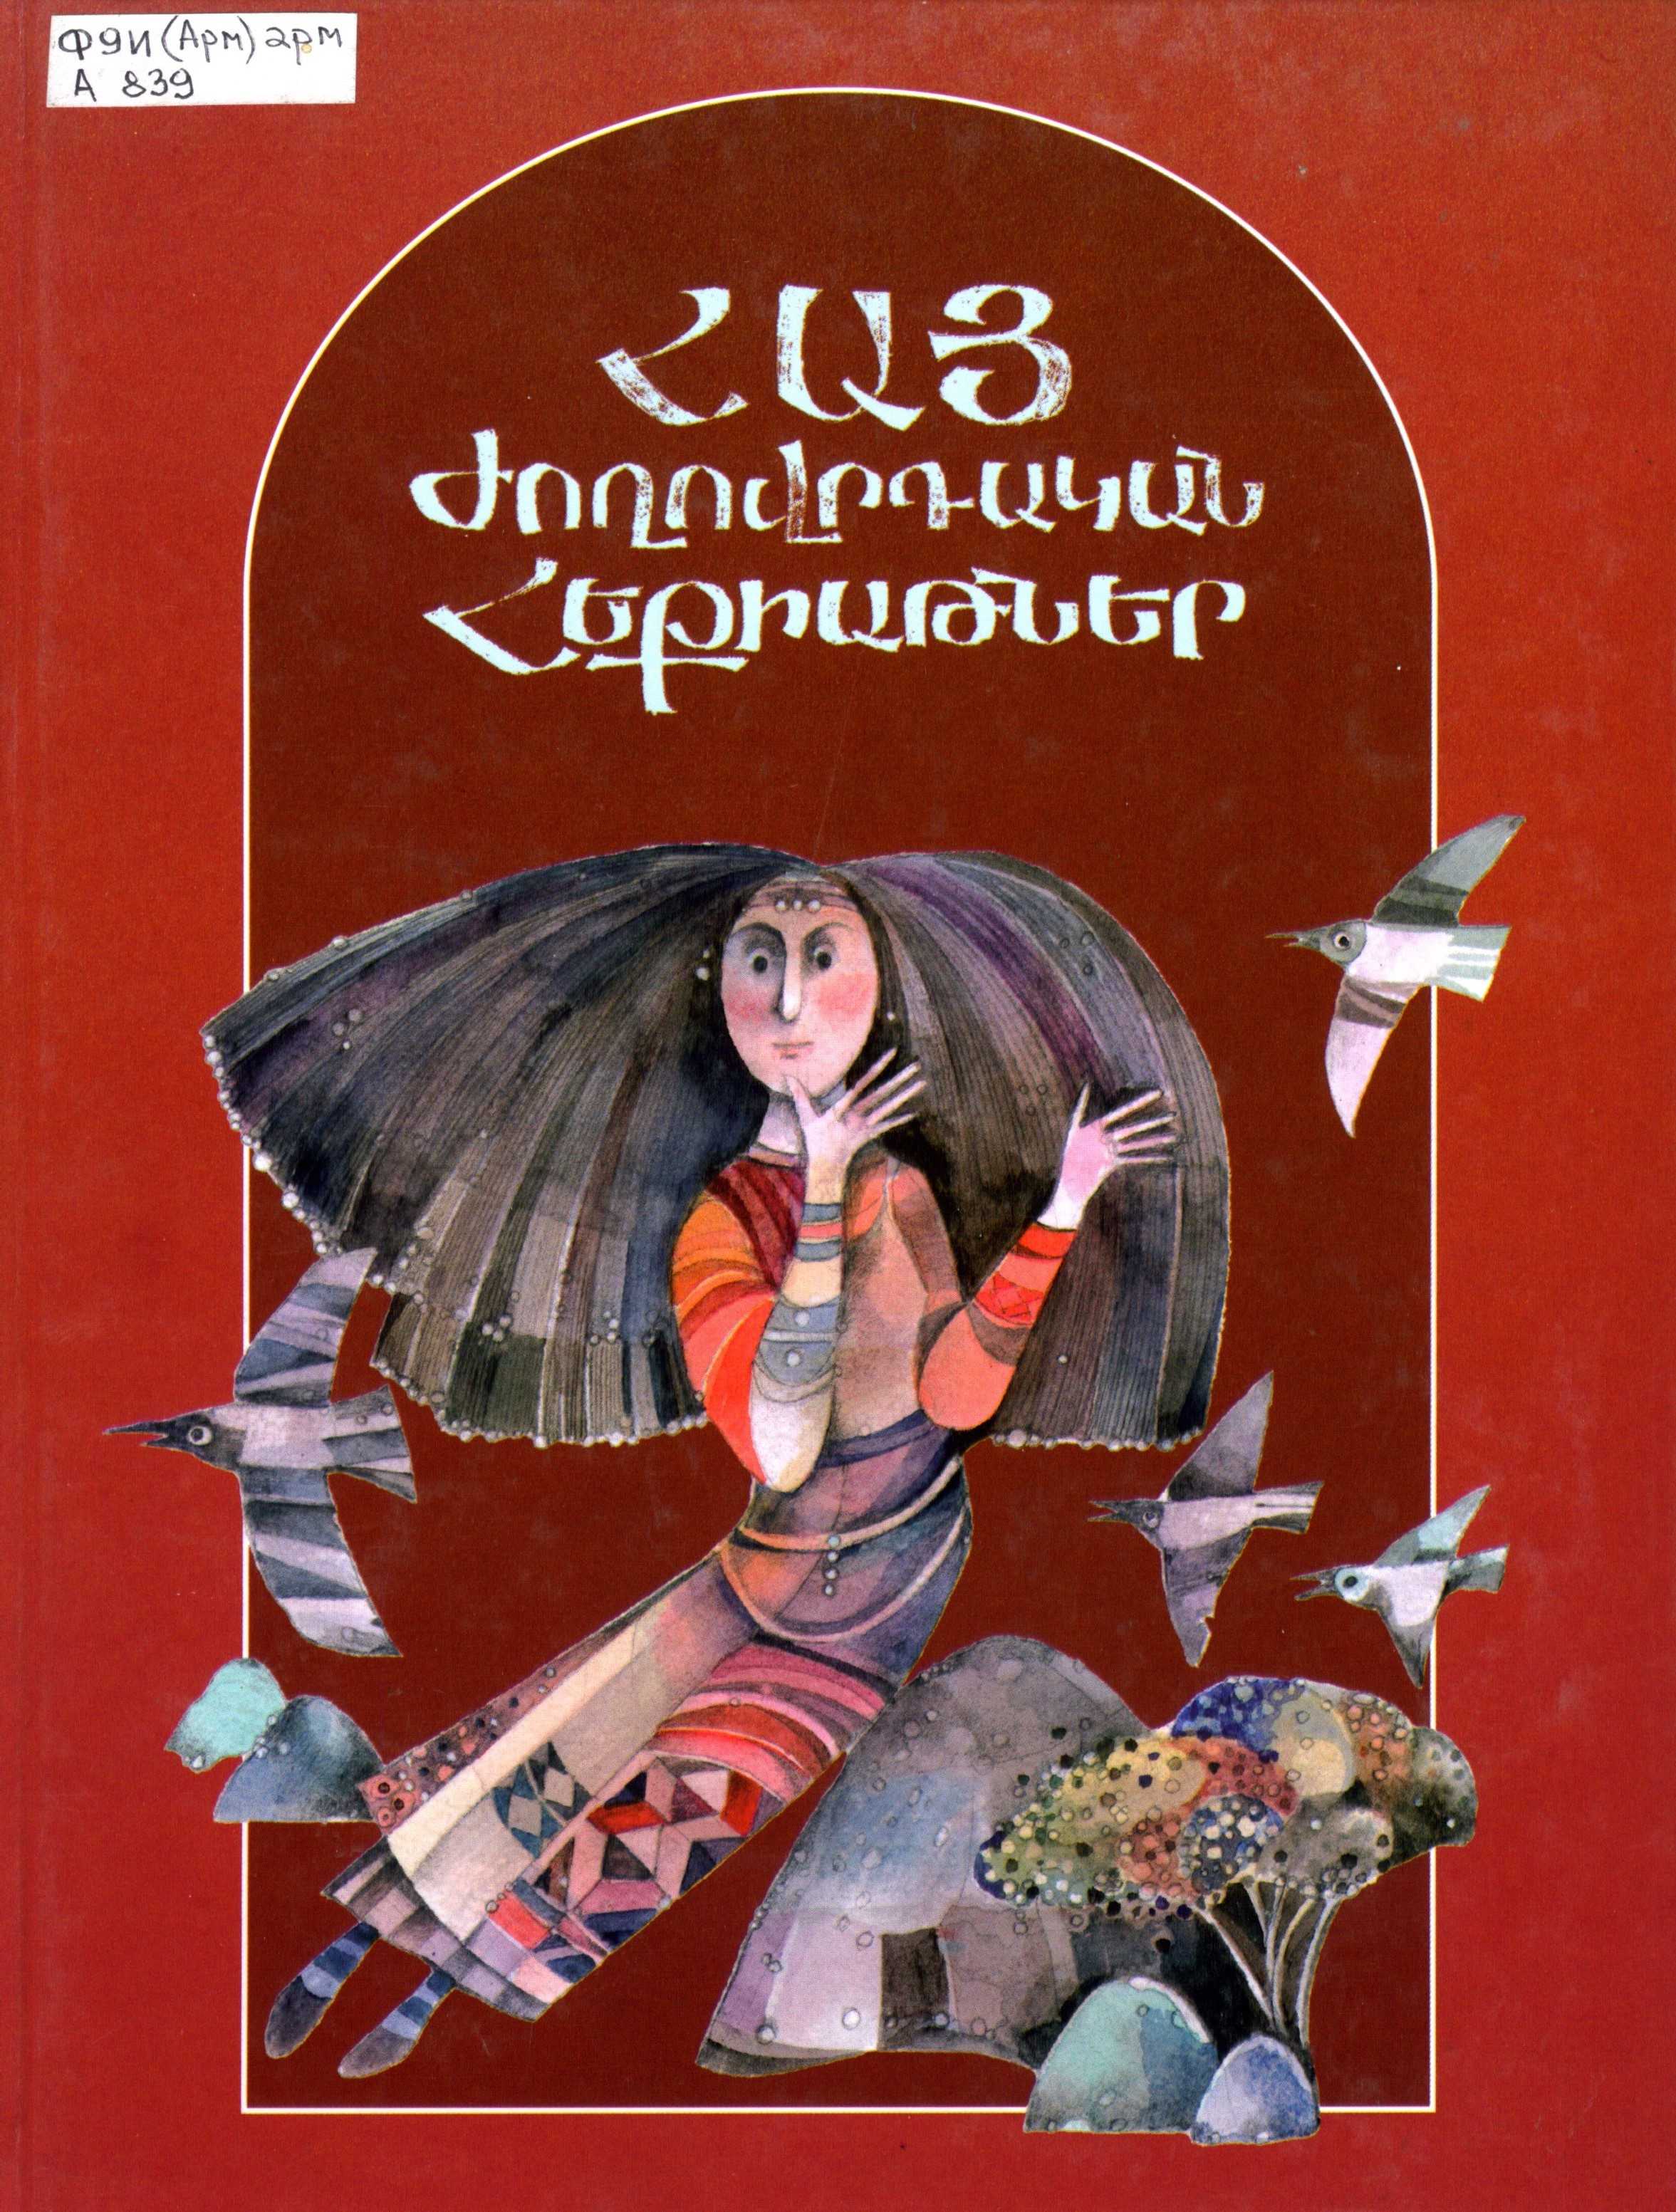 Армянская литература - википедия - armenian literature